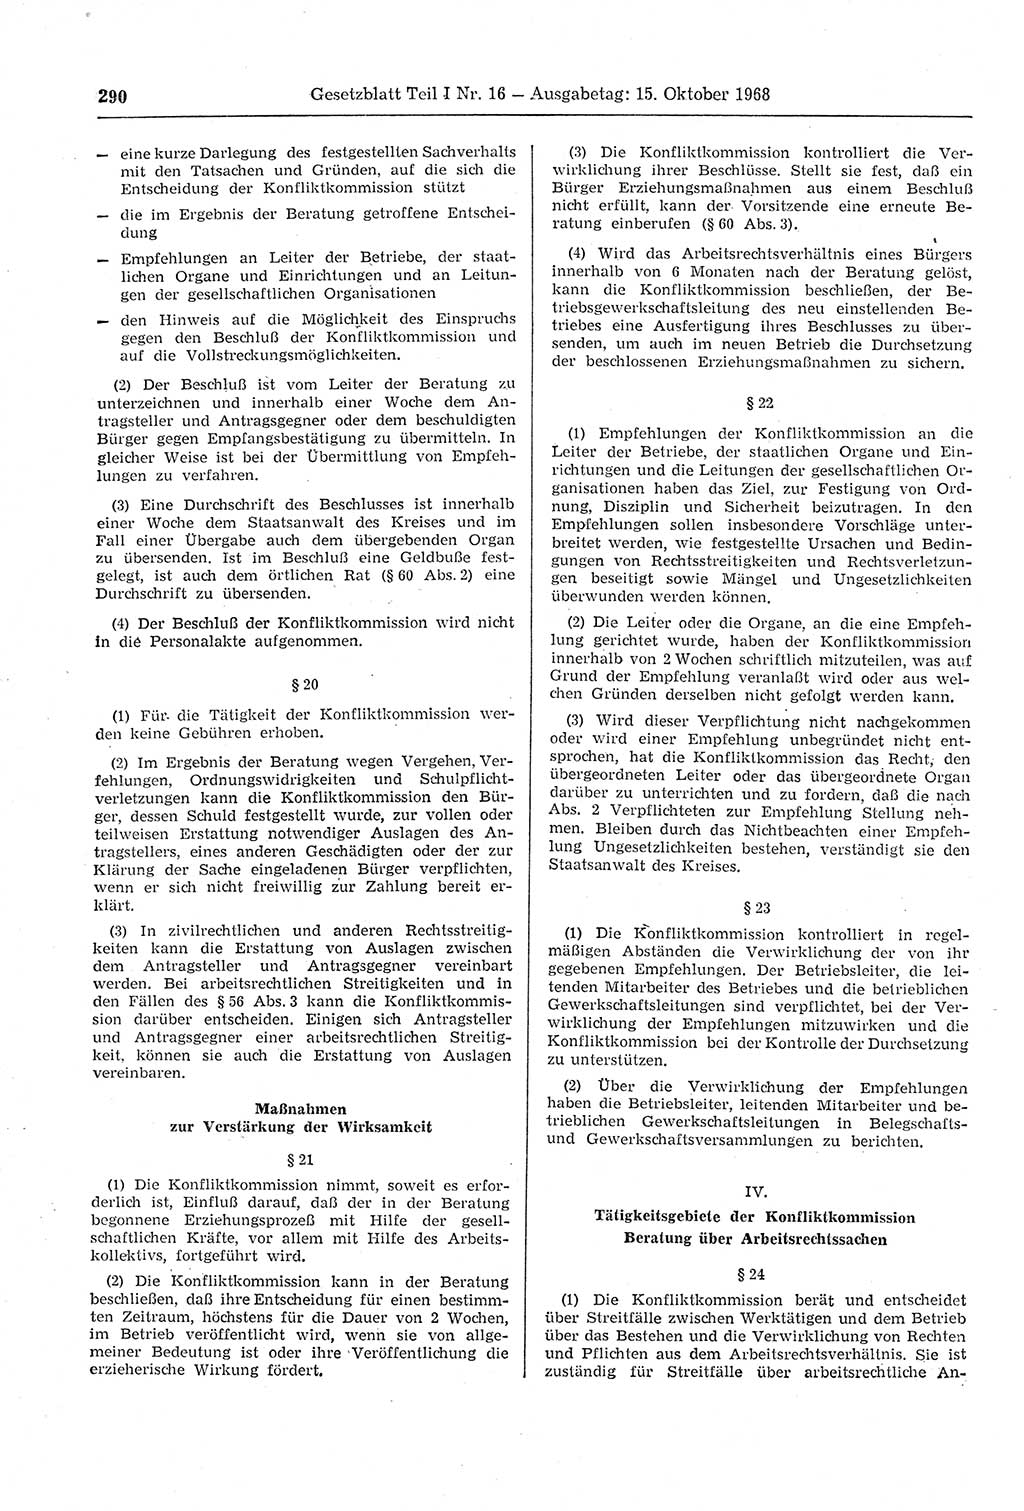 Gesetzblatt (GBl.) der Deutschen Demokratischen Republik (DDR) Teil Ⅰ 1968, Seite 290 (GBl. DDR Ⅰ 1968, S. 290)